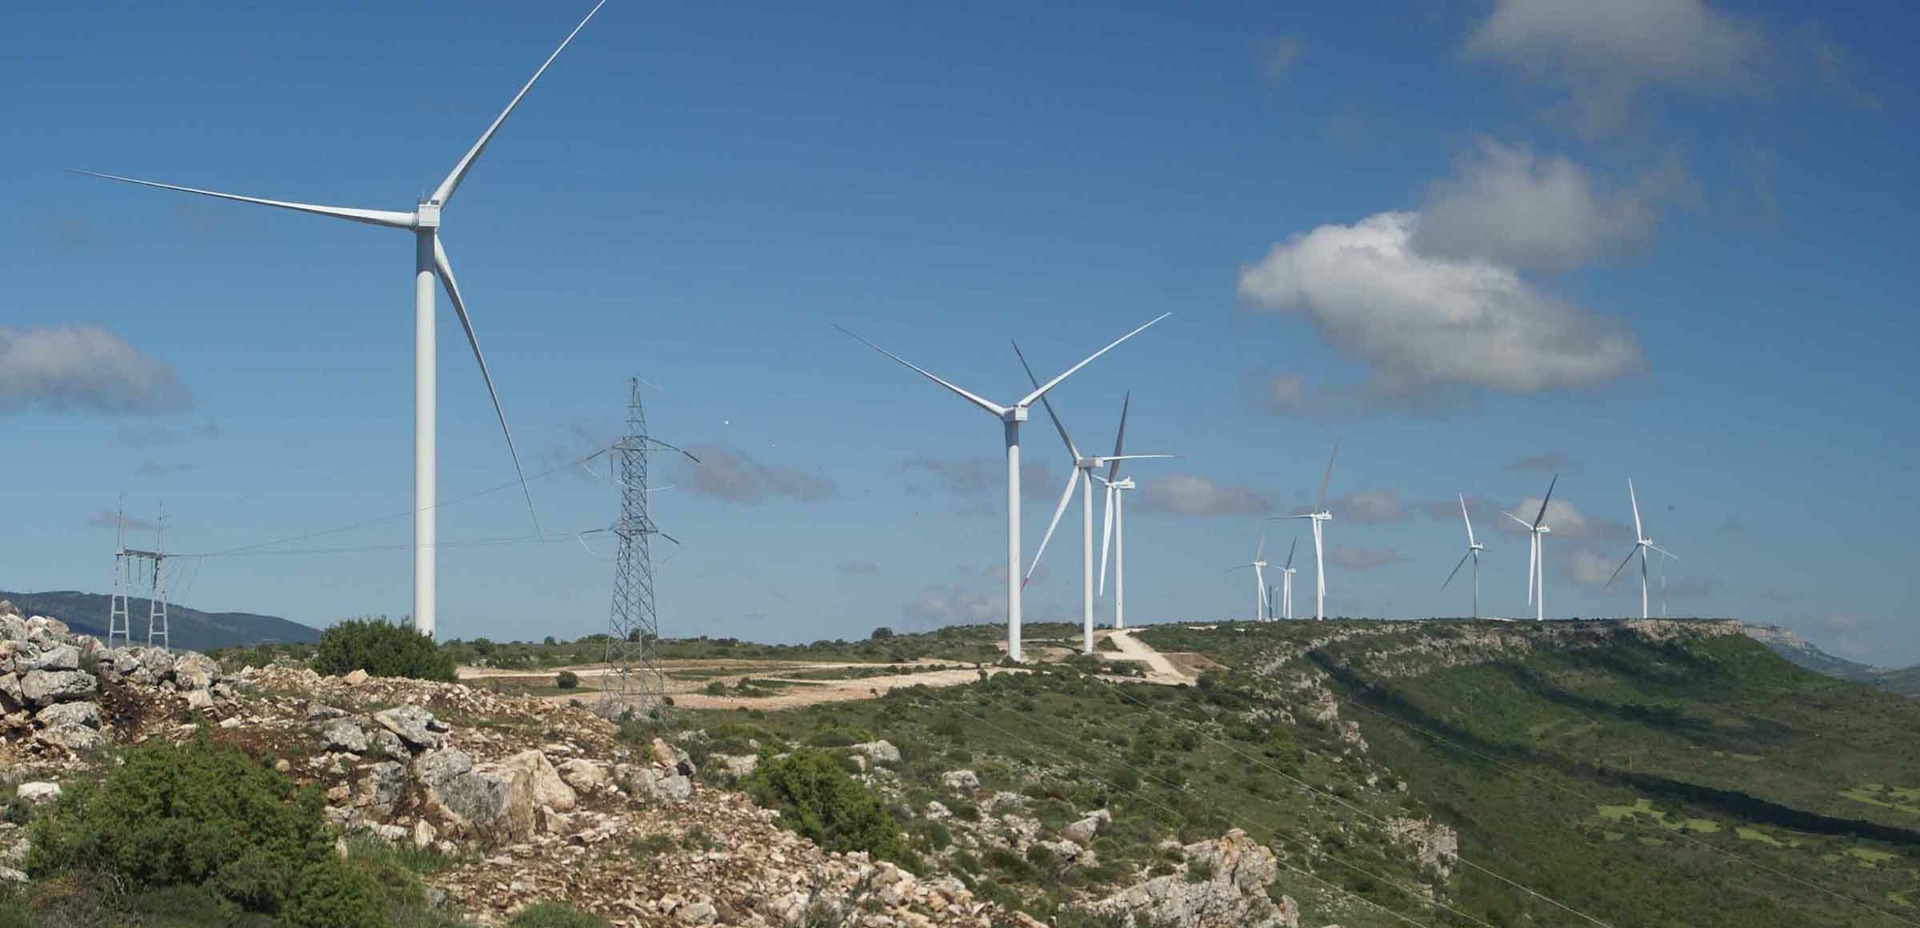 Η ιταλική εταιρεία Enel θέλει να πουλήσει τις ανανεώσιμες πηγές ενέργειας στην Ελλάδα / Πώληση της Enel Romania υπό διαπραγμάτευση με τη μεγαλύτερη εταιρεία ηλεκτρικής ενέργειας της Ελλάδας